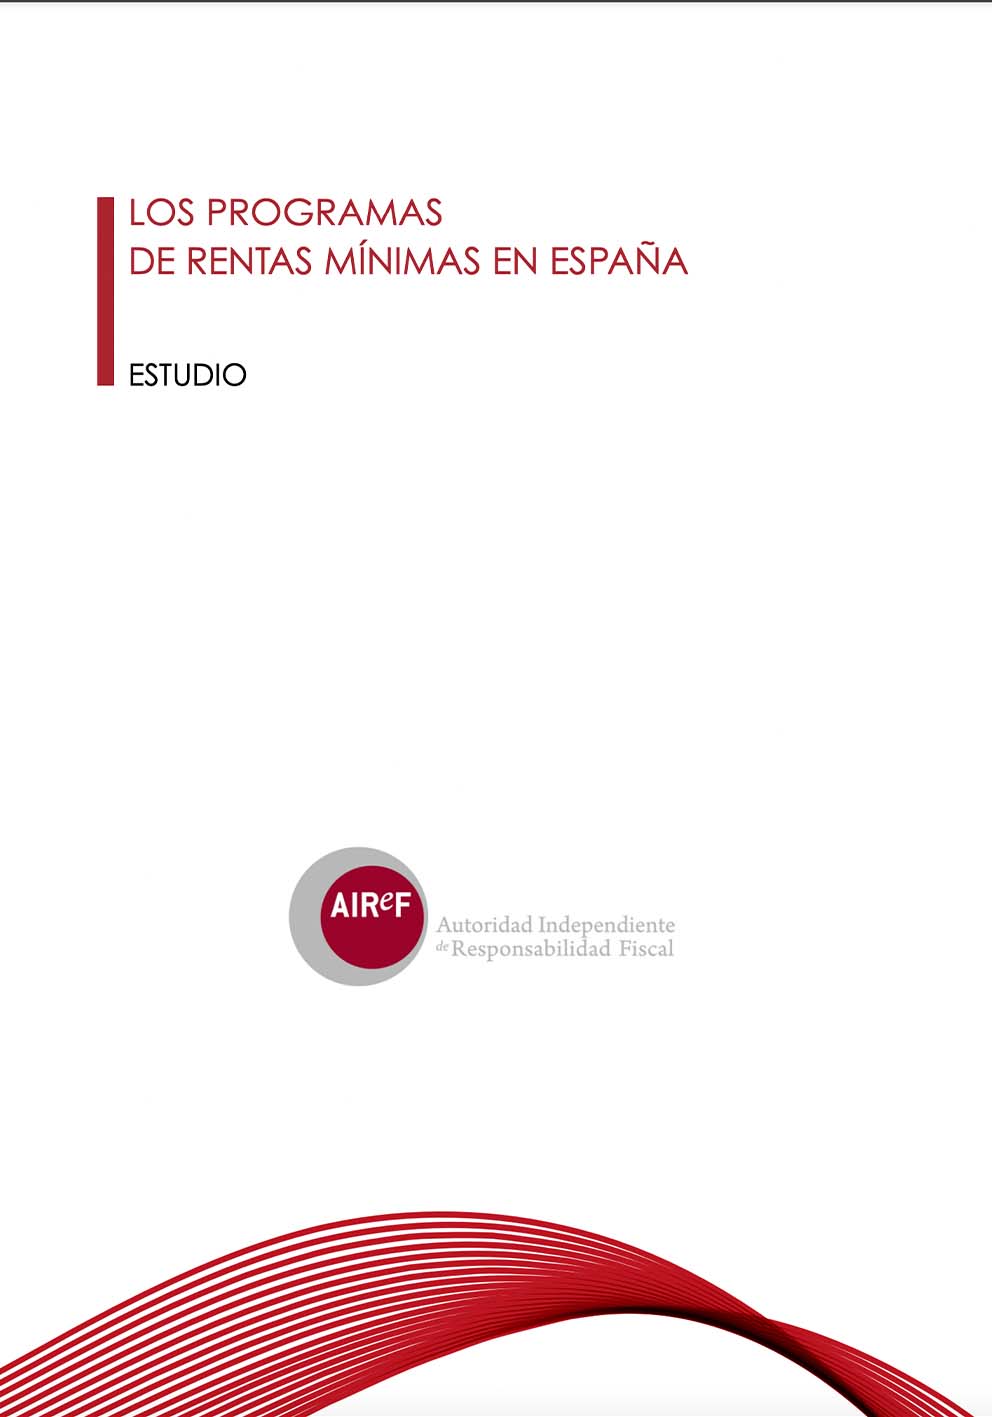 Los programas de rentas mínimas en España